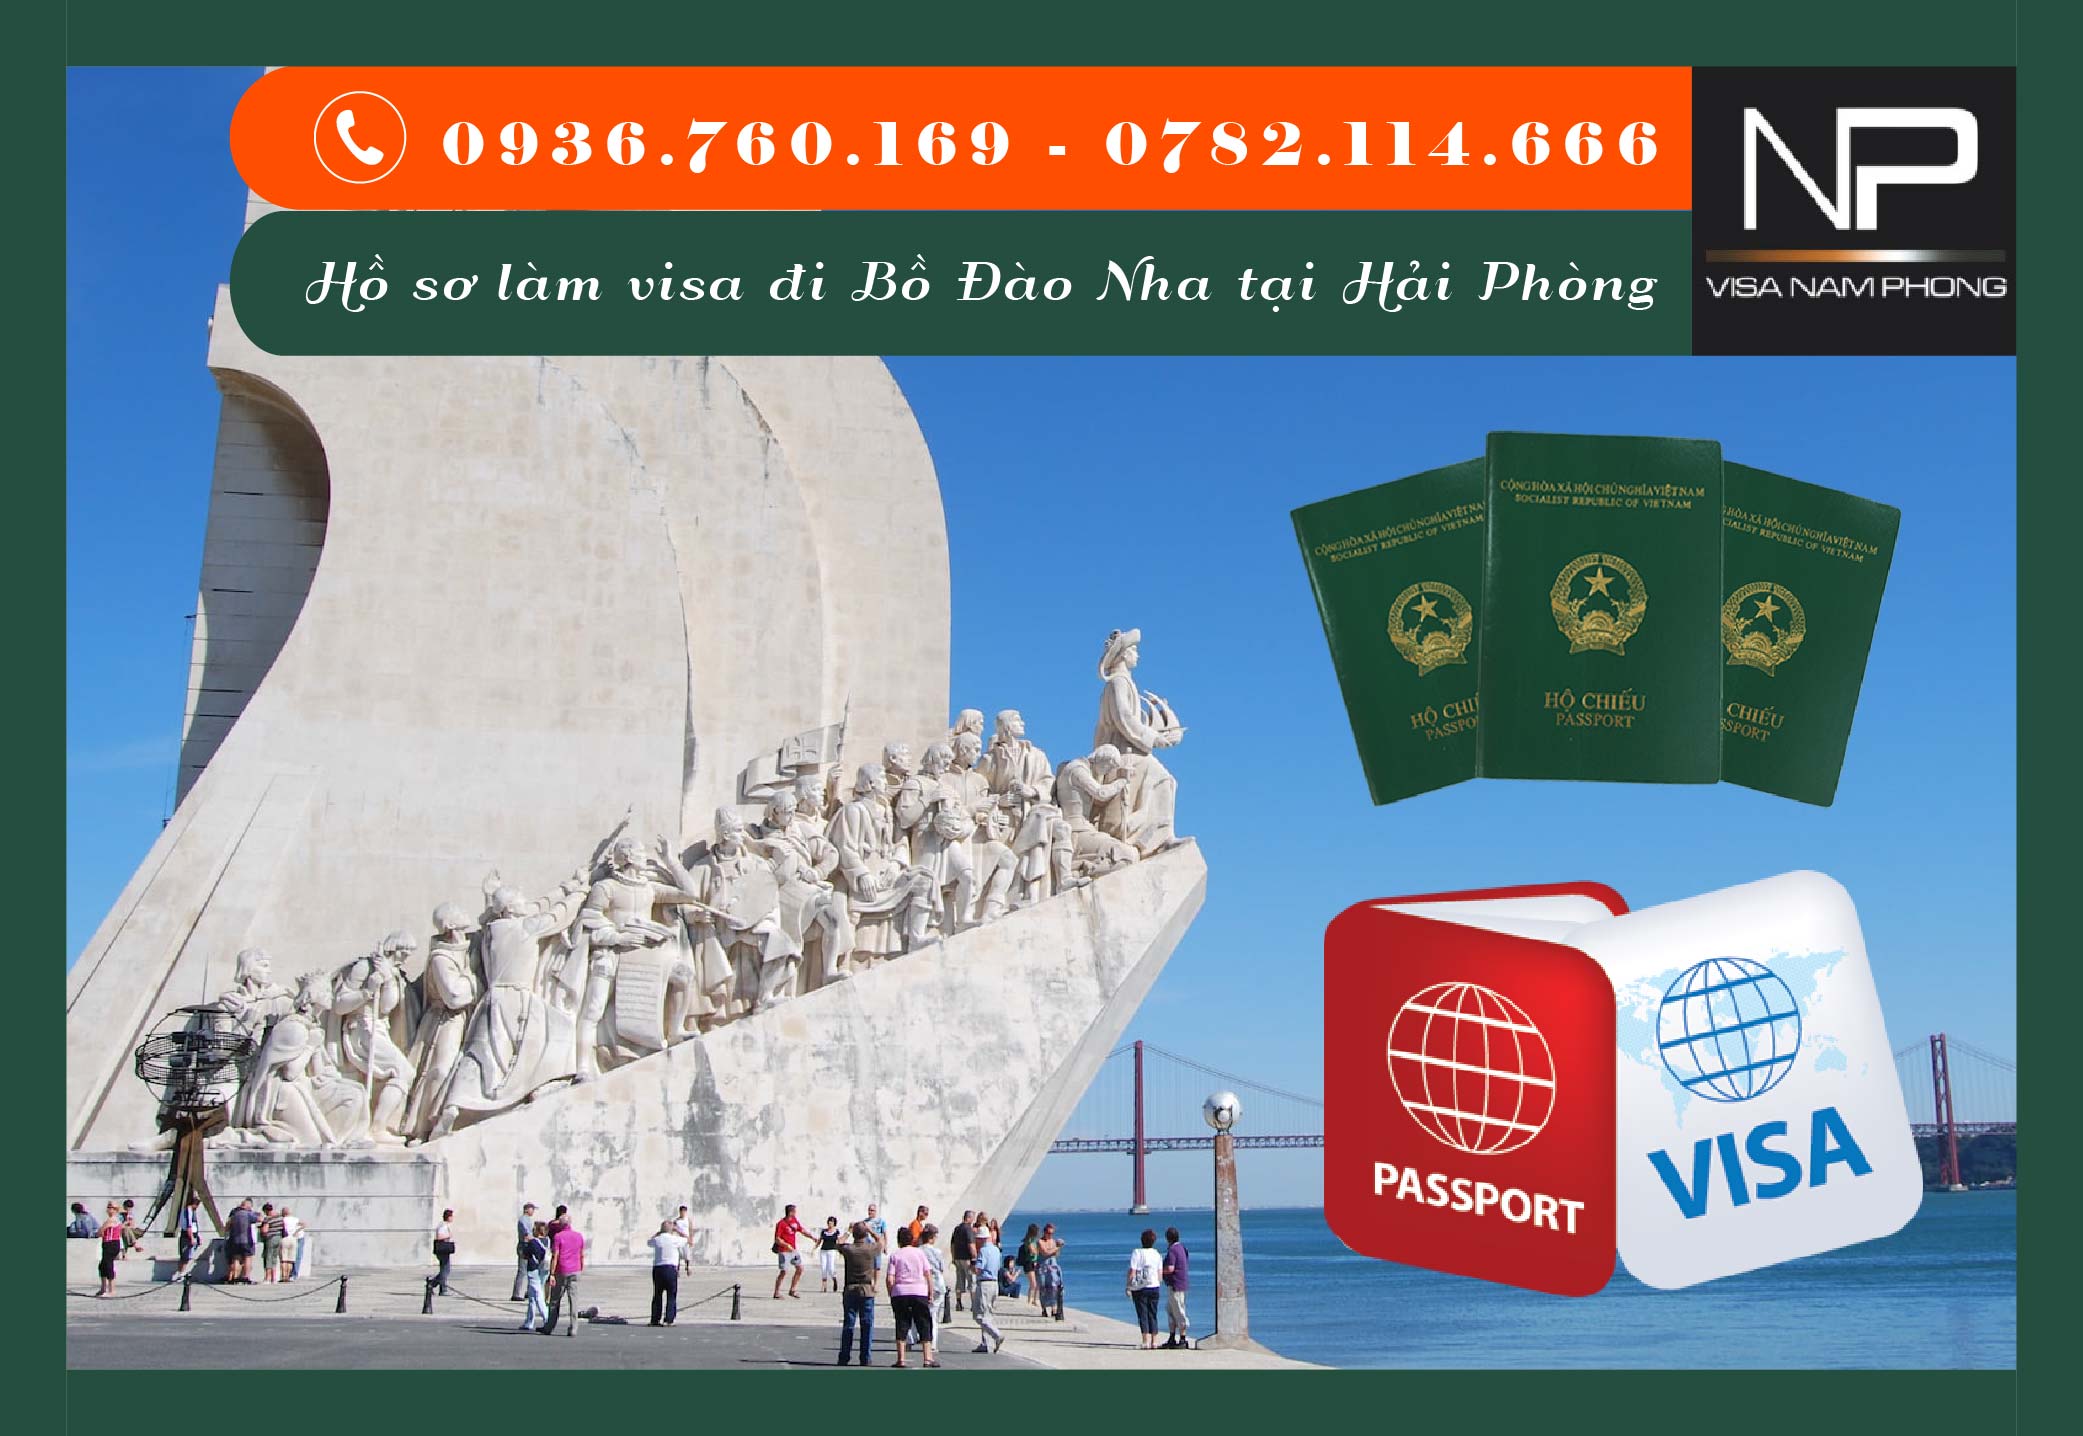 Hồ sơ làm visa đi Bồ Đào Nha tại Hải Phòng